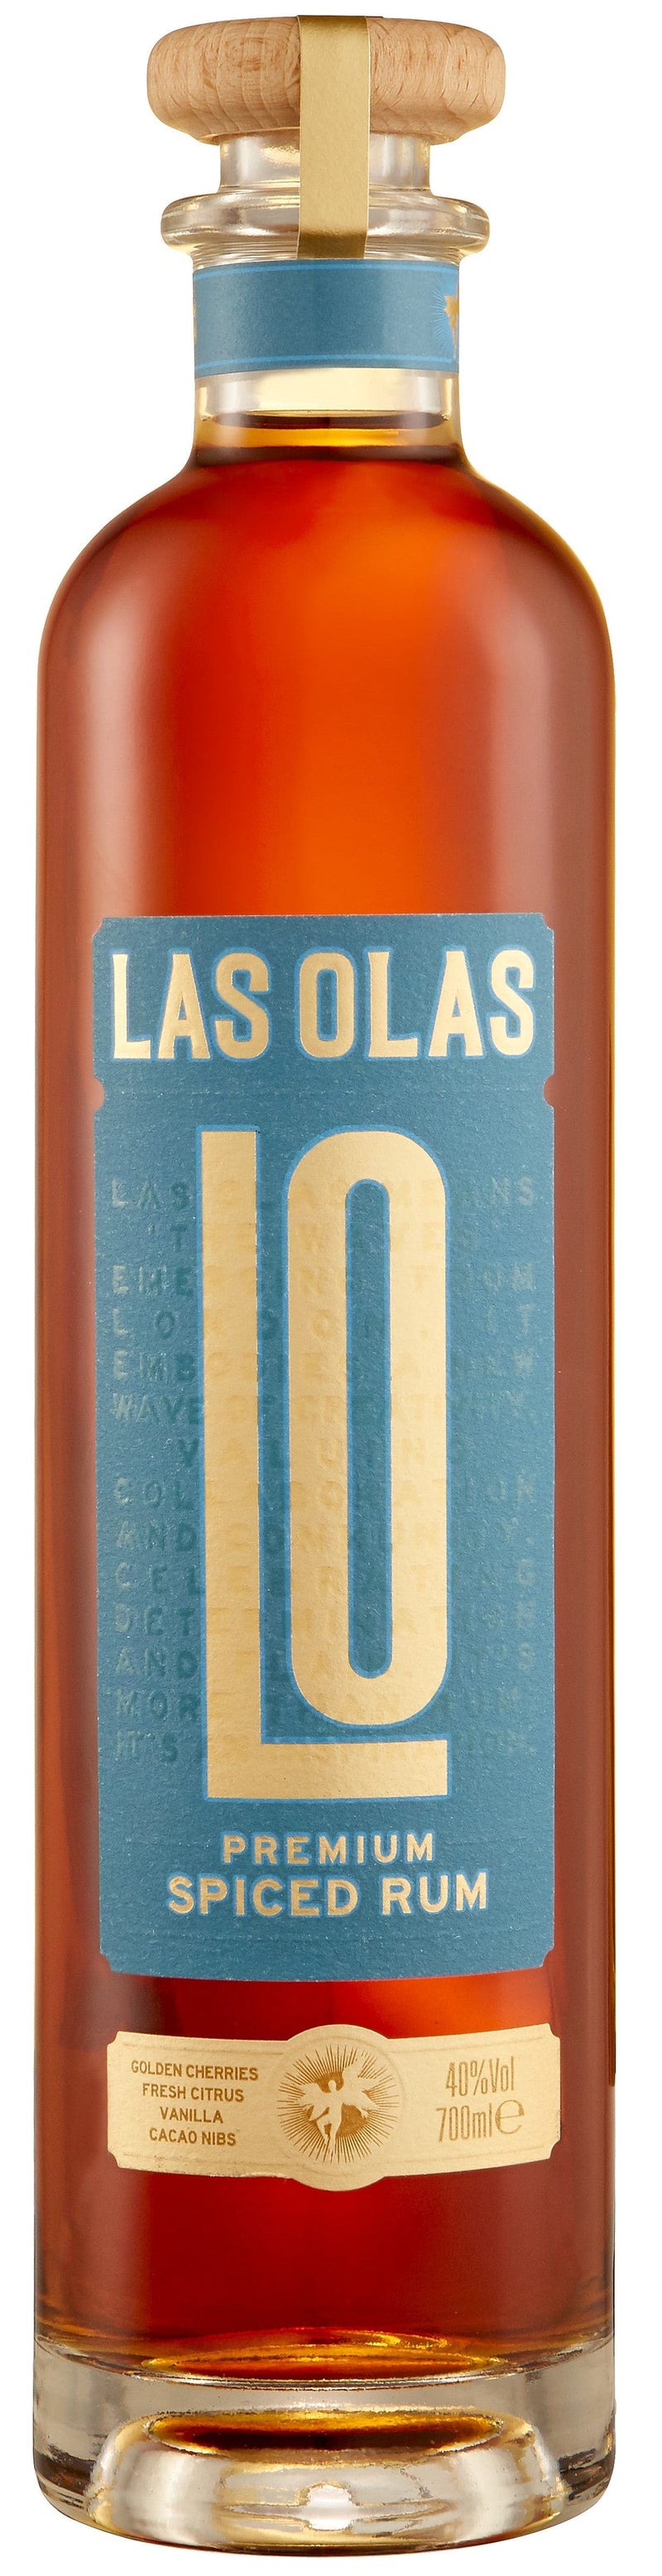 Las Olas Premium Spiced Rum 70cl